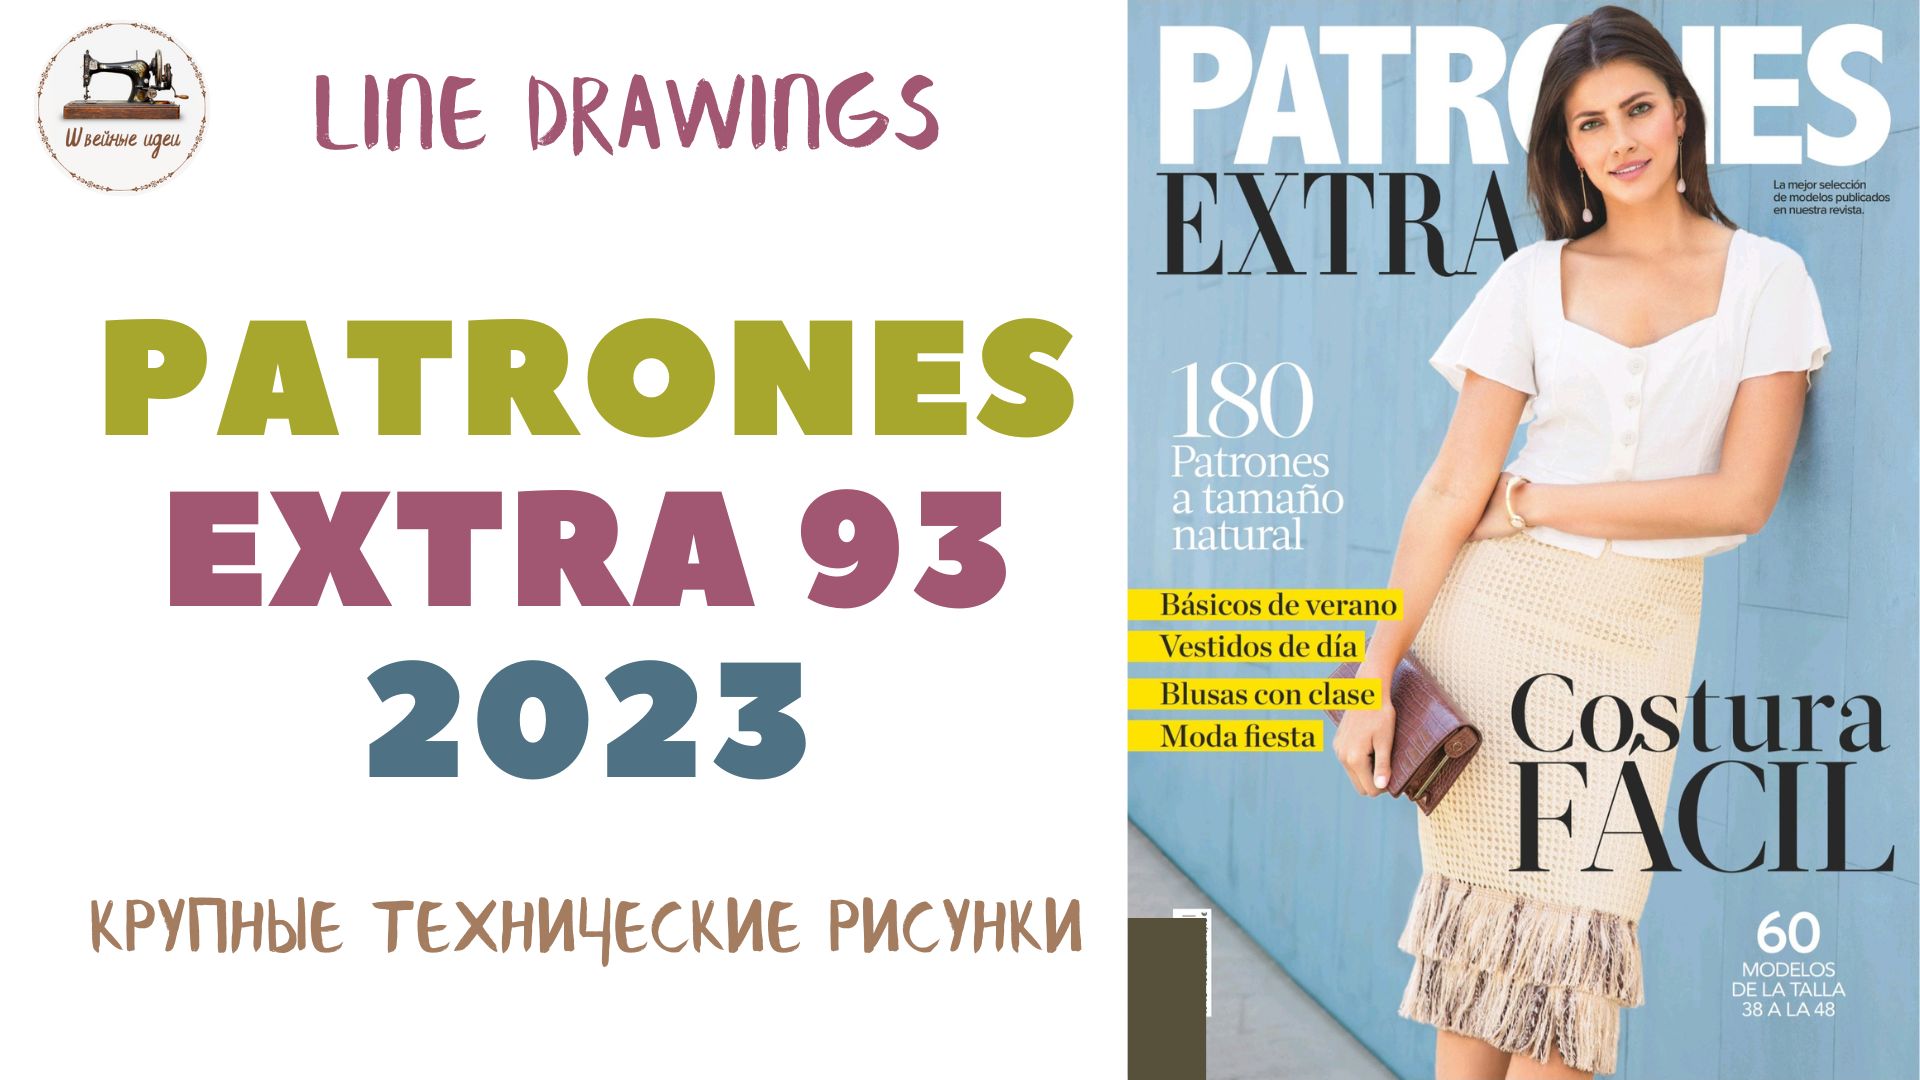 PATRONES EXTRA 93. Технические рисунки 60 моделей одежды. Гардероб современной женщины